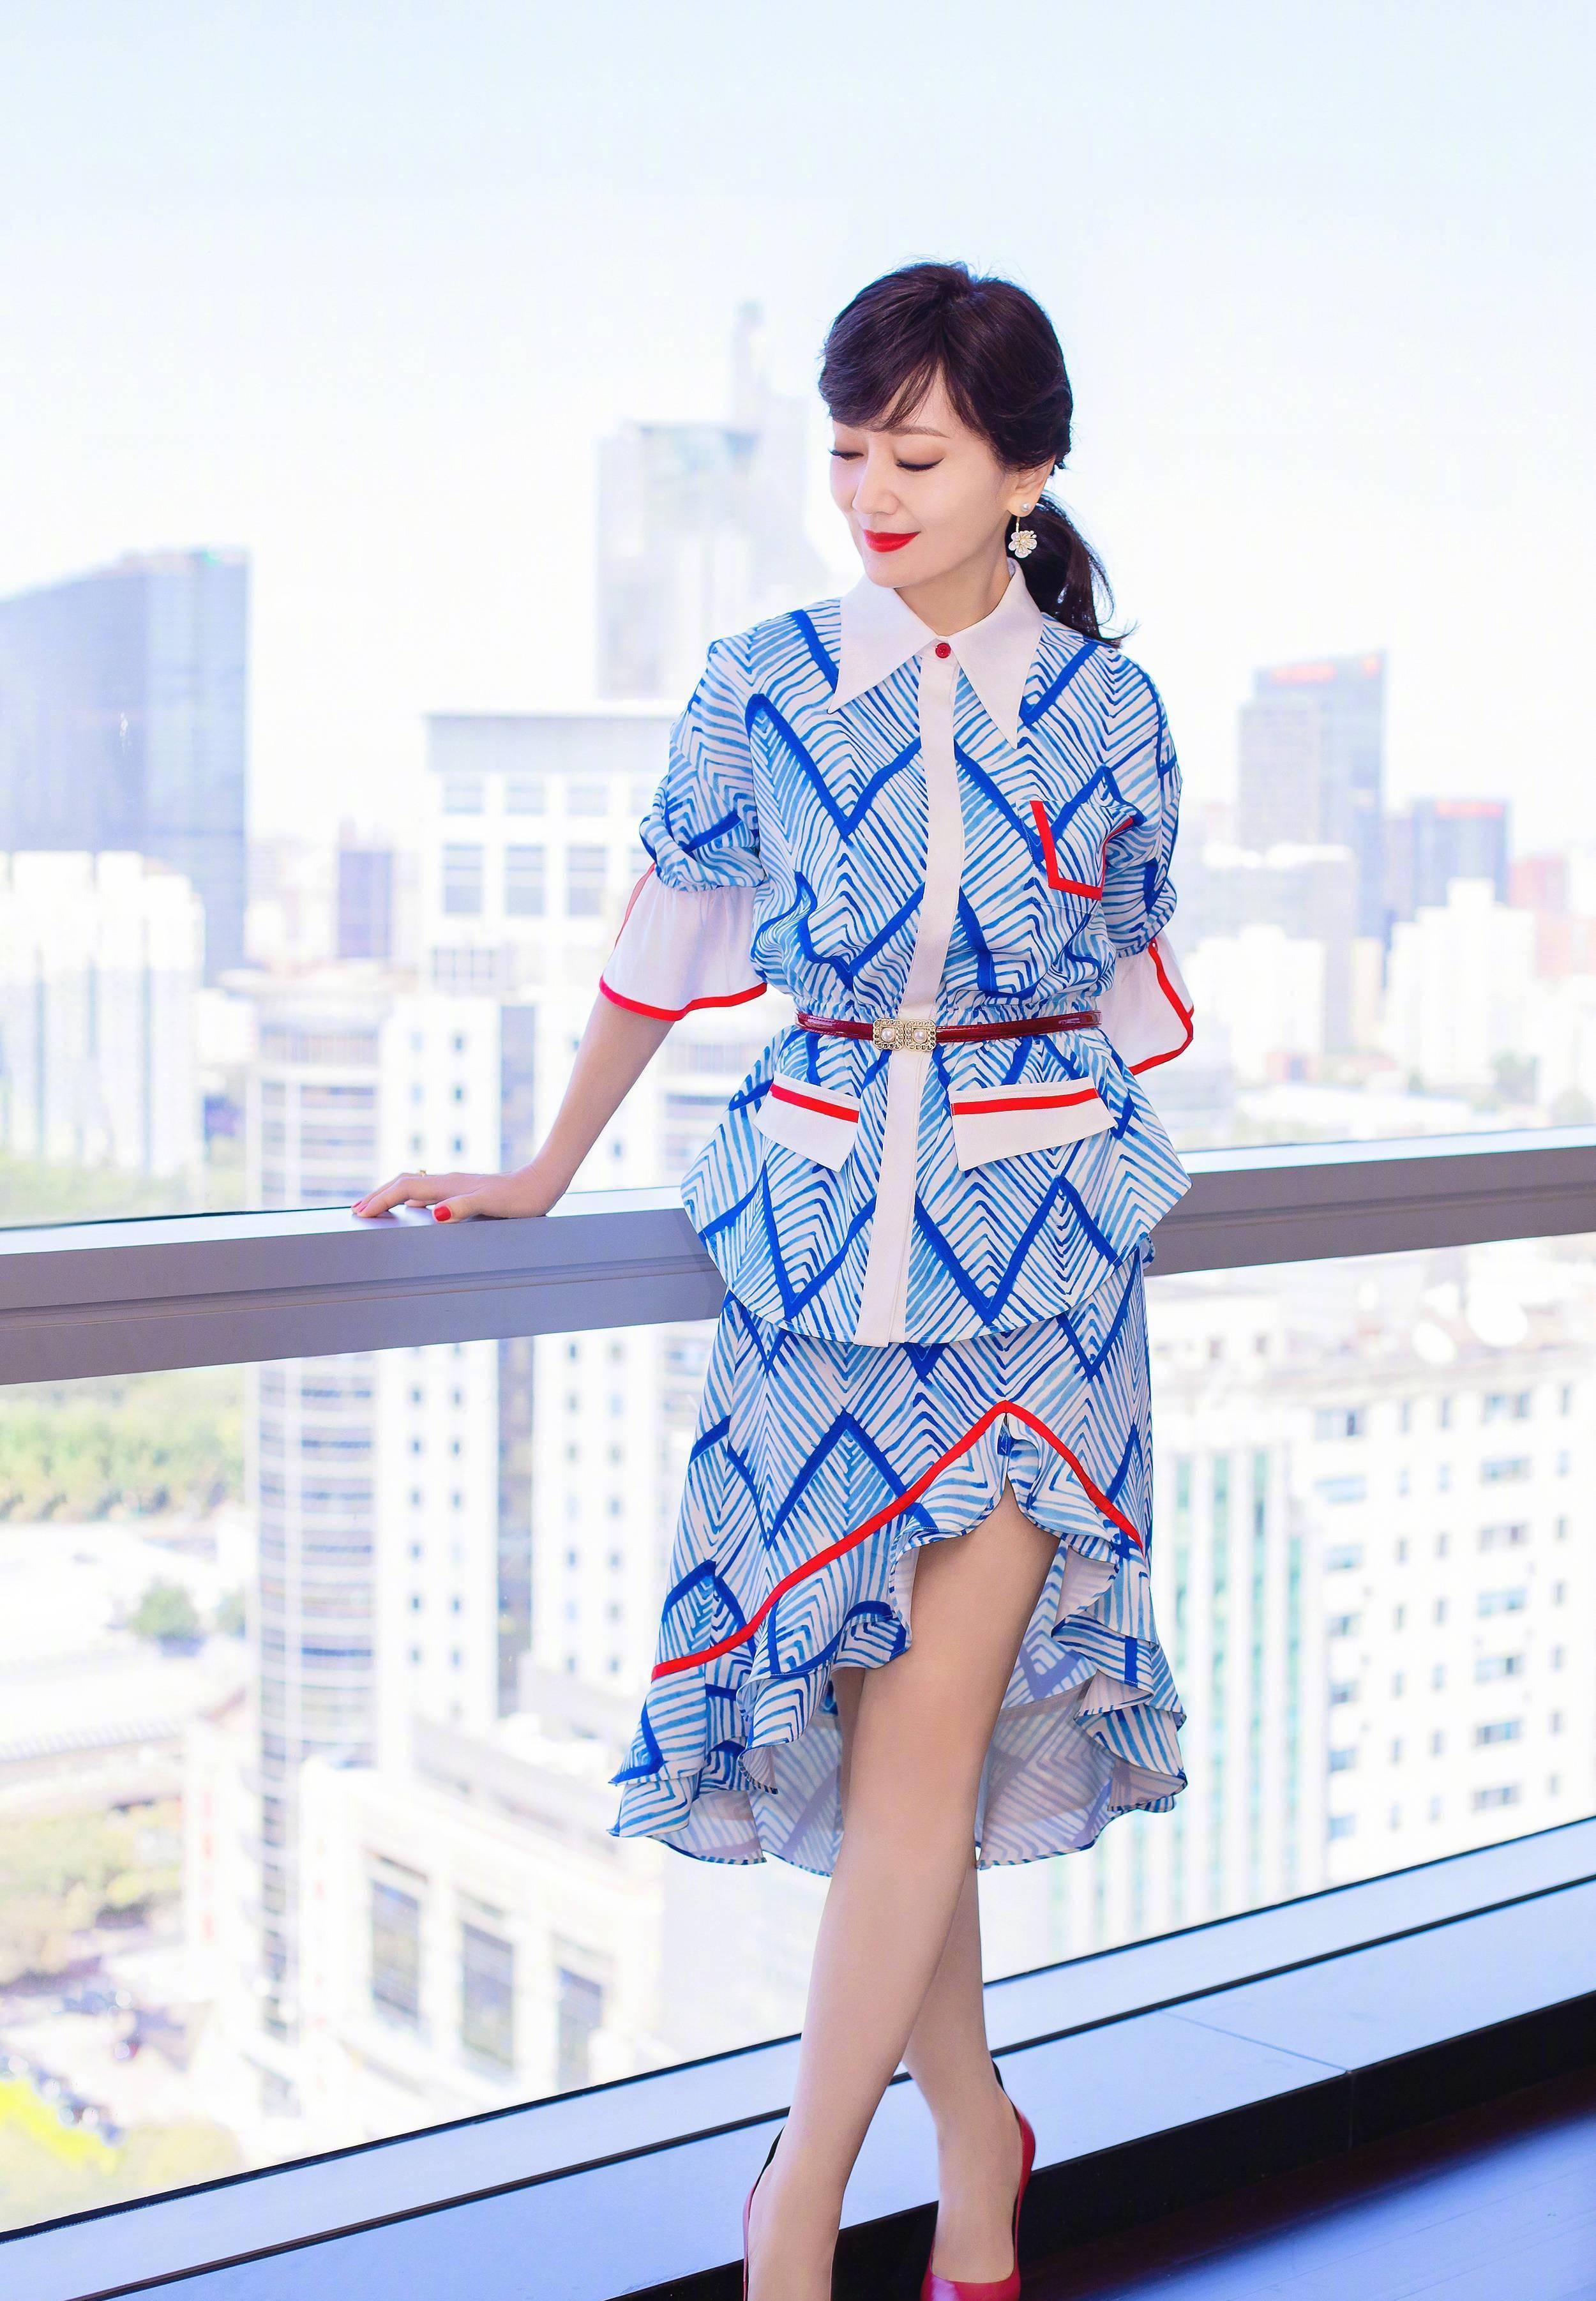 混纺材料的服装穿在身上能体现出高贵感,赵雅芝用一款简短的裙子设计